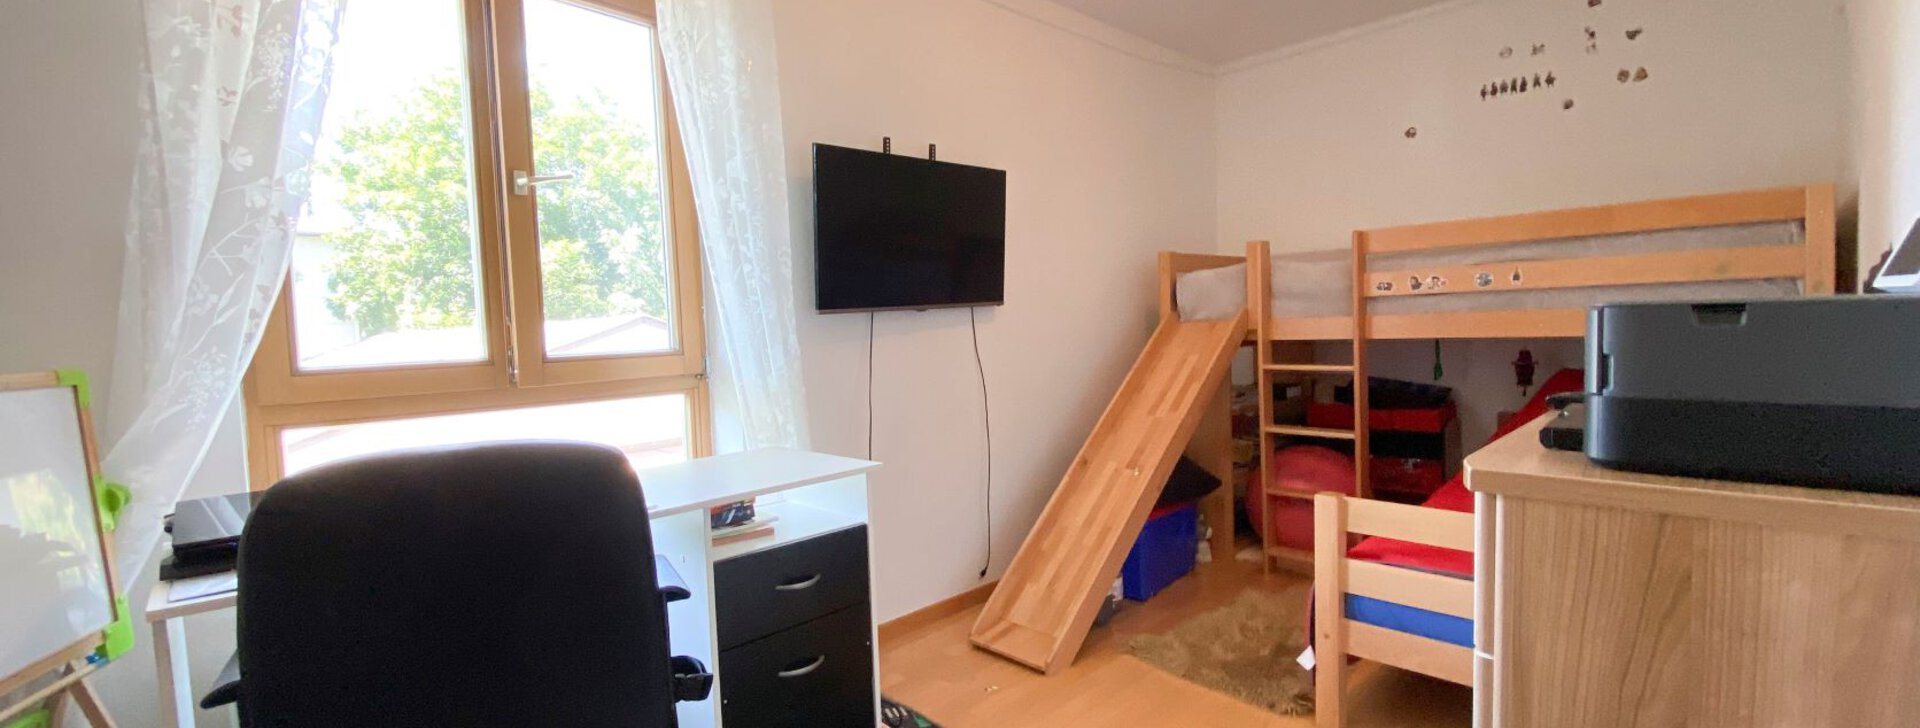 Kinderzimmer, 3-Zimmer-Wohnung in Hallbergmoos, Immobilie kaufen, Hallbergmoos | © HausBauHaus GmbH